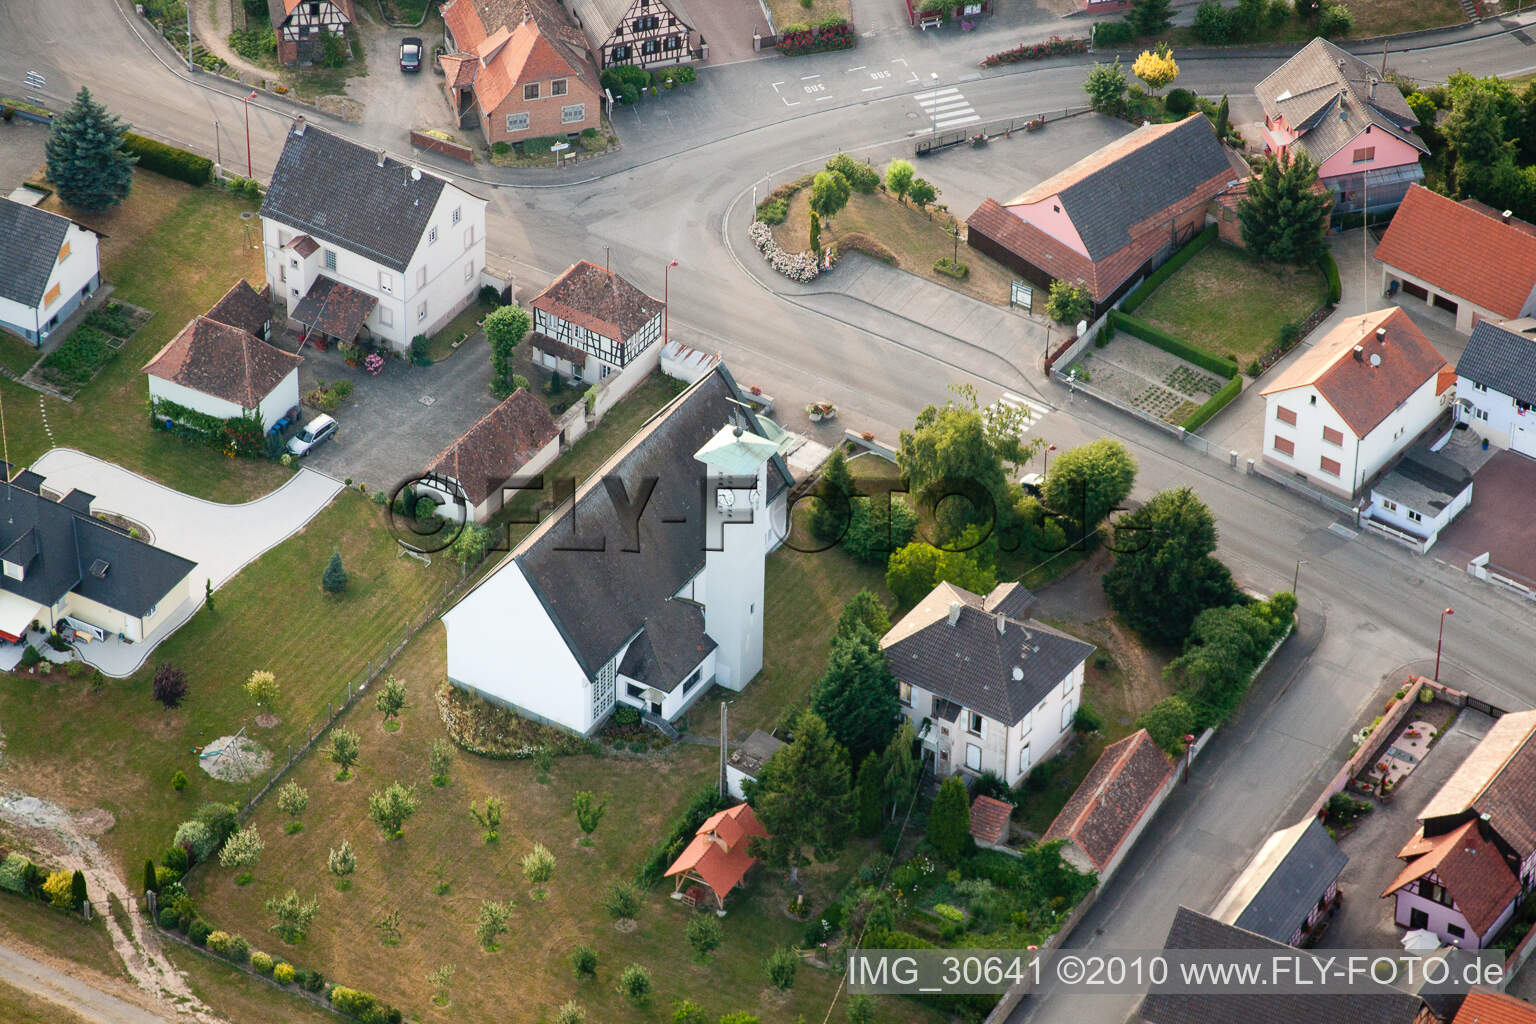 Scheibenhardt in Scheibenhard in the state Bas-Rhin, France seen from a drone